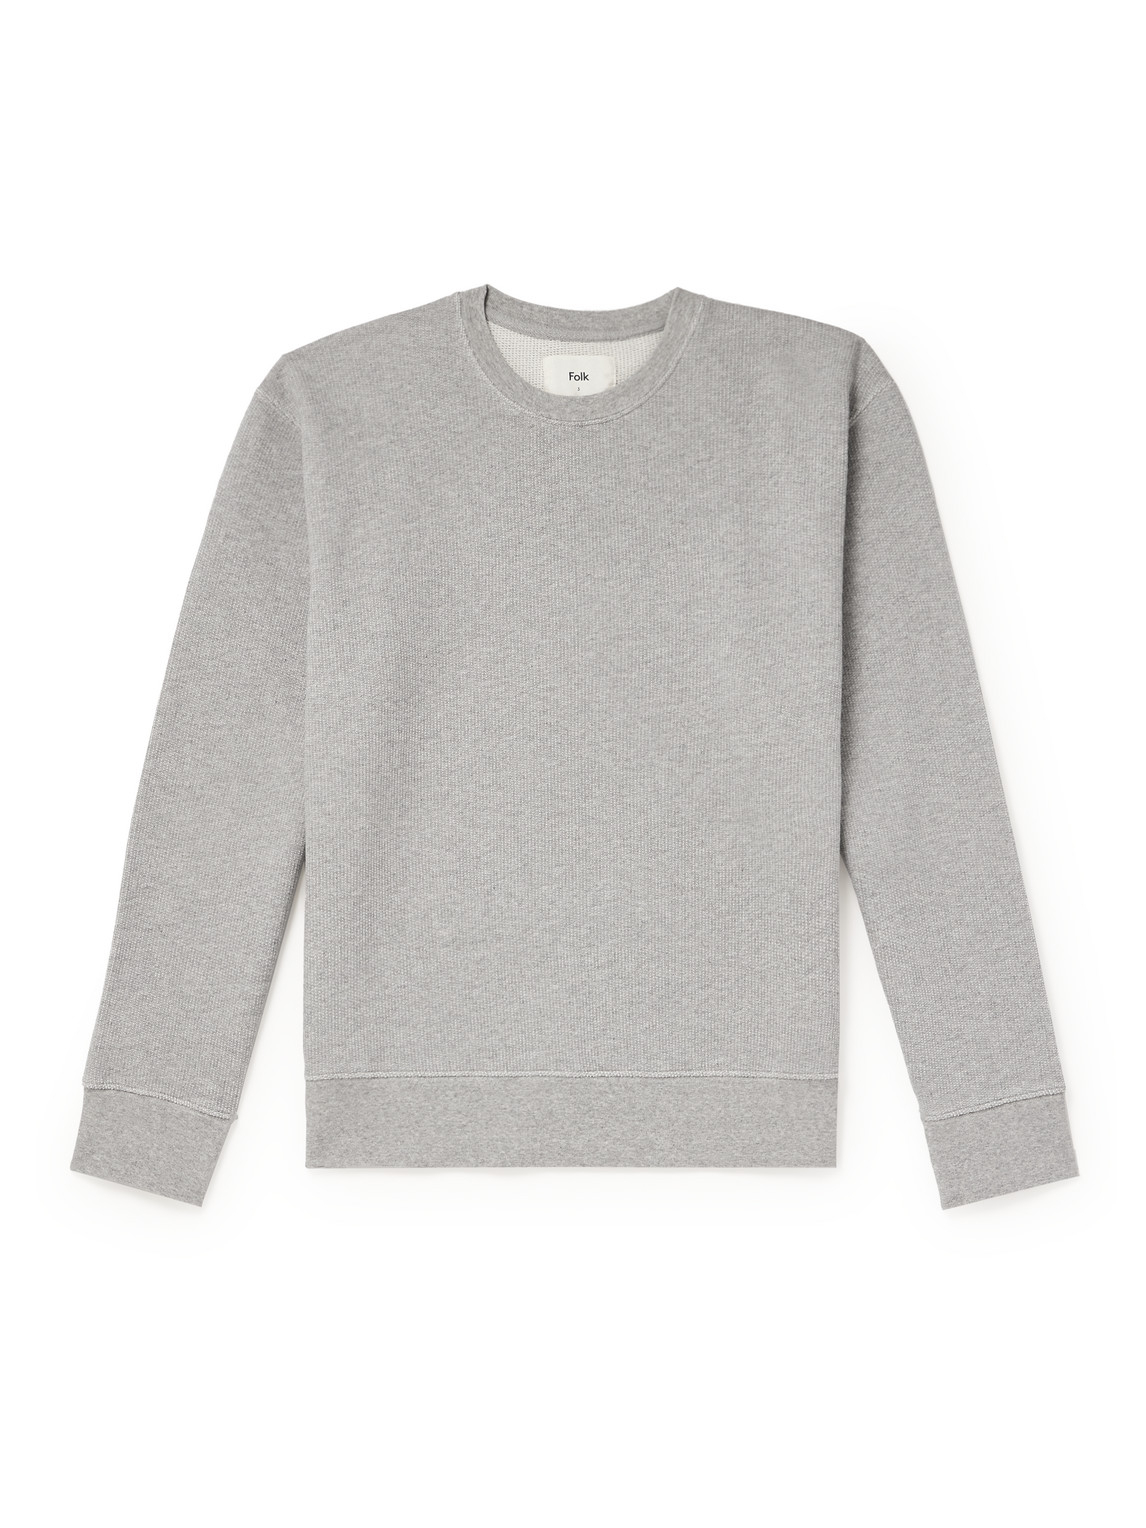 Folk Cotton-jersey Sweatshirt In Gray